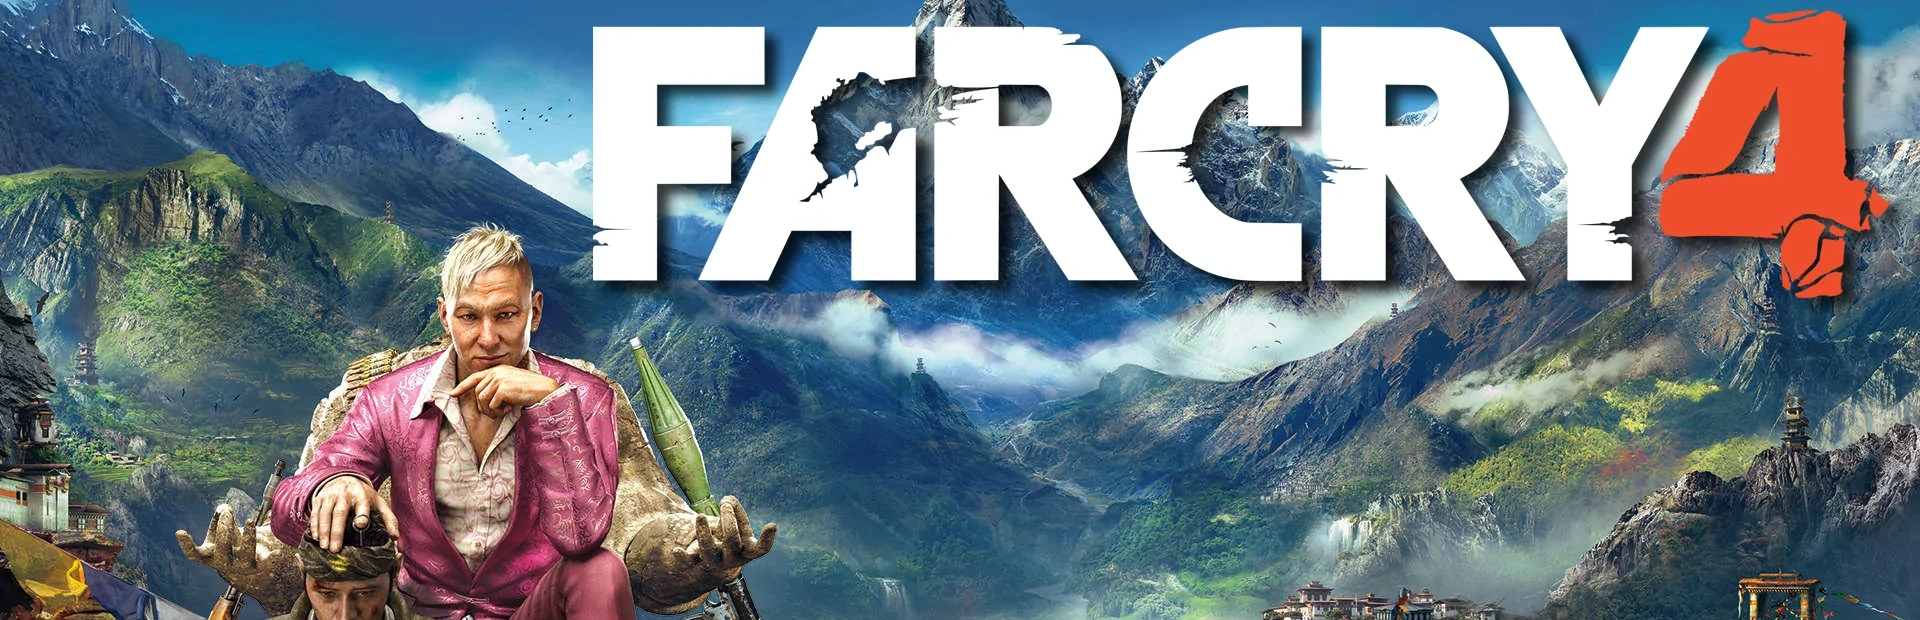 دانلود بازی Far Cry 4 برای کامپیوتر | گیمباتو